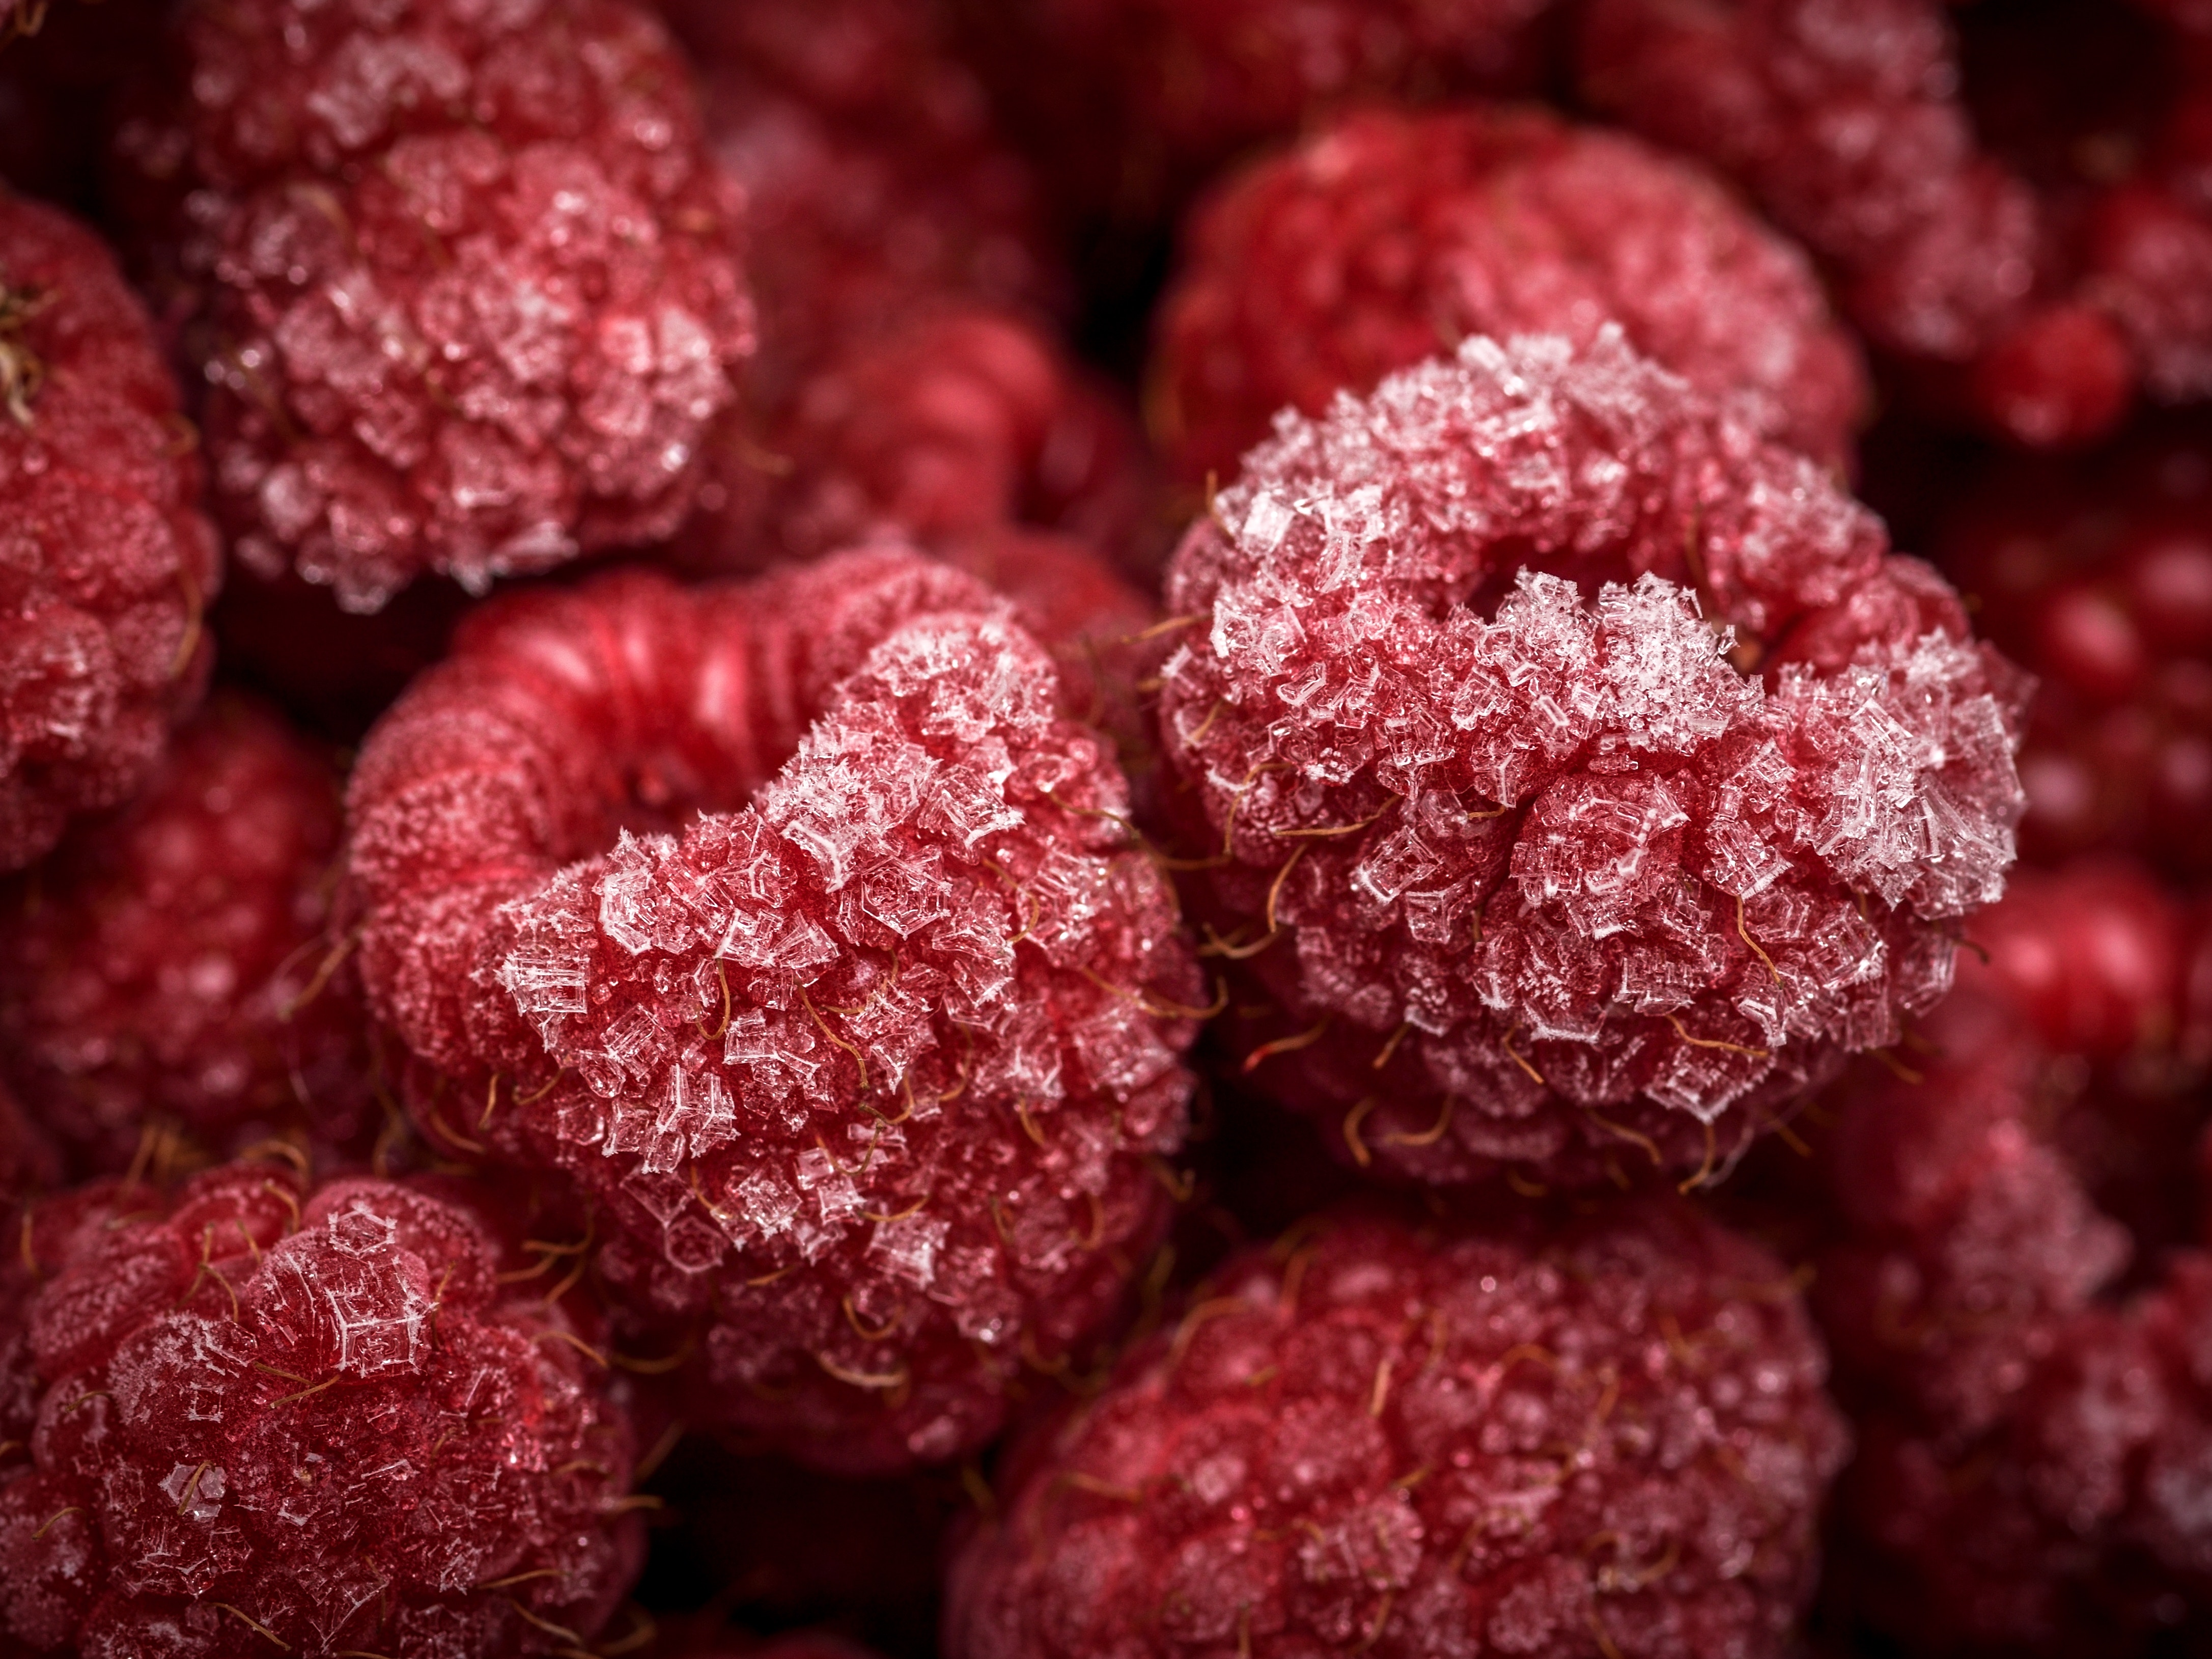 Raspberry texture